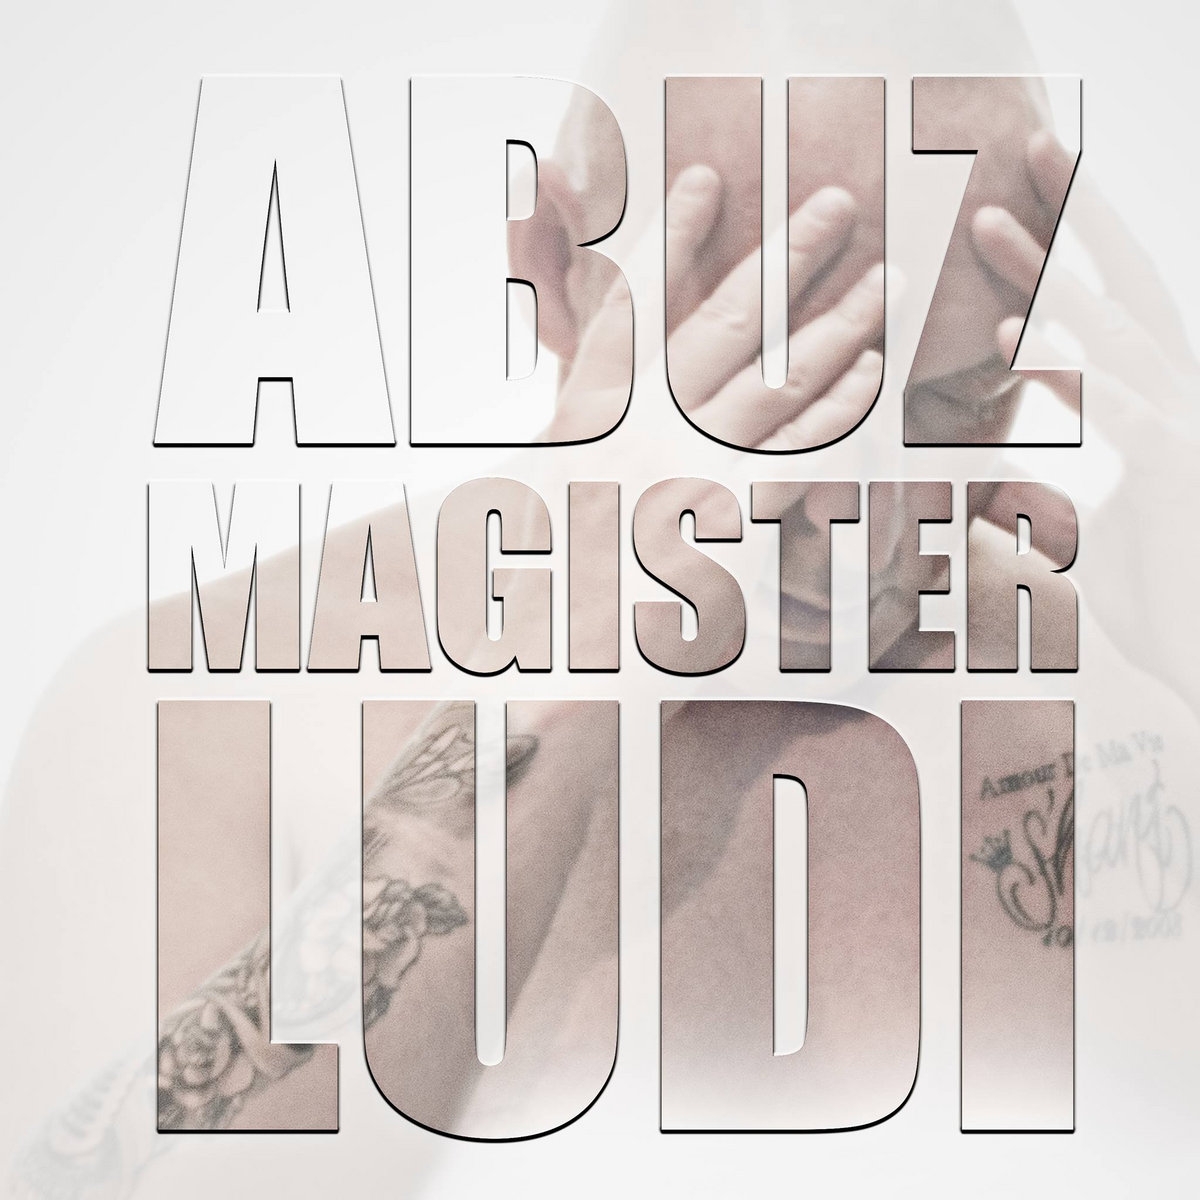 Album Cd Abuz Magister Ludi de dabuz sur Scredboutique.com